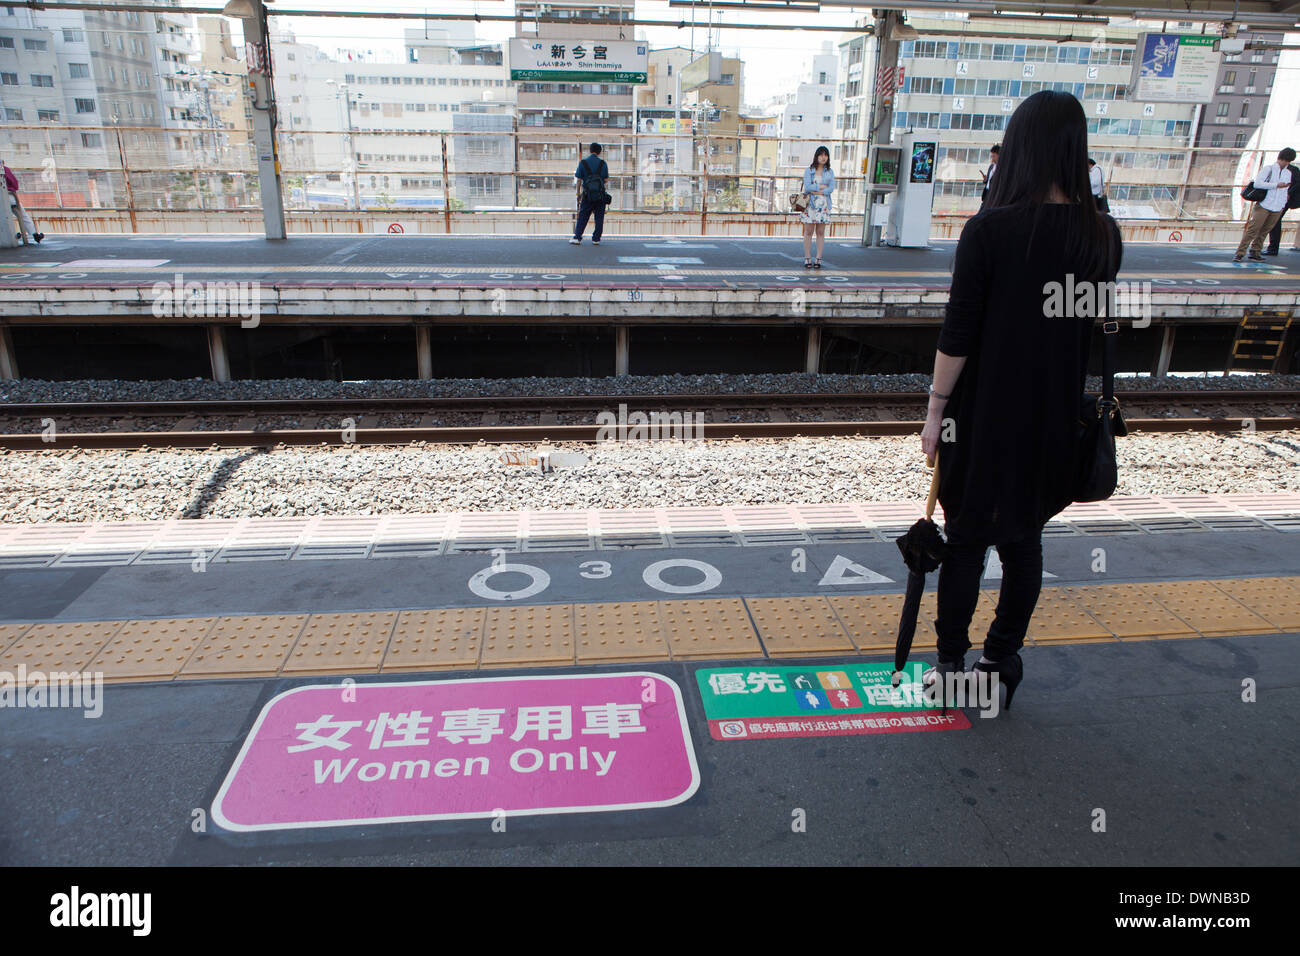 Le Japon, la station de chemin de fer. Une femme attend le train pour femmes seulement à bord d'un véhicule. Banque D'Images